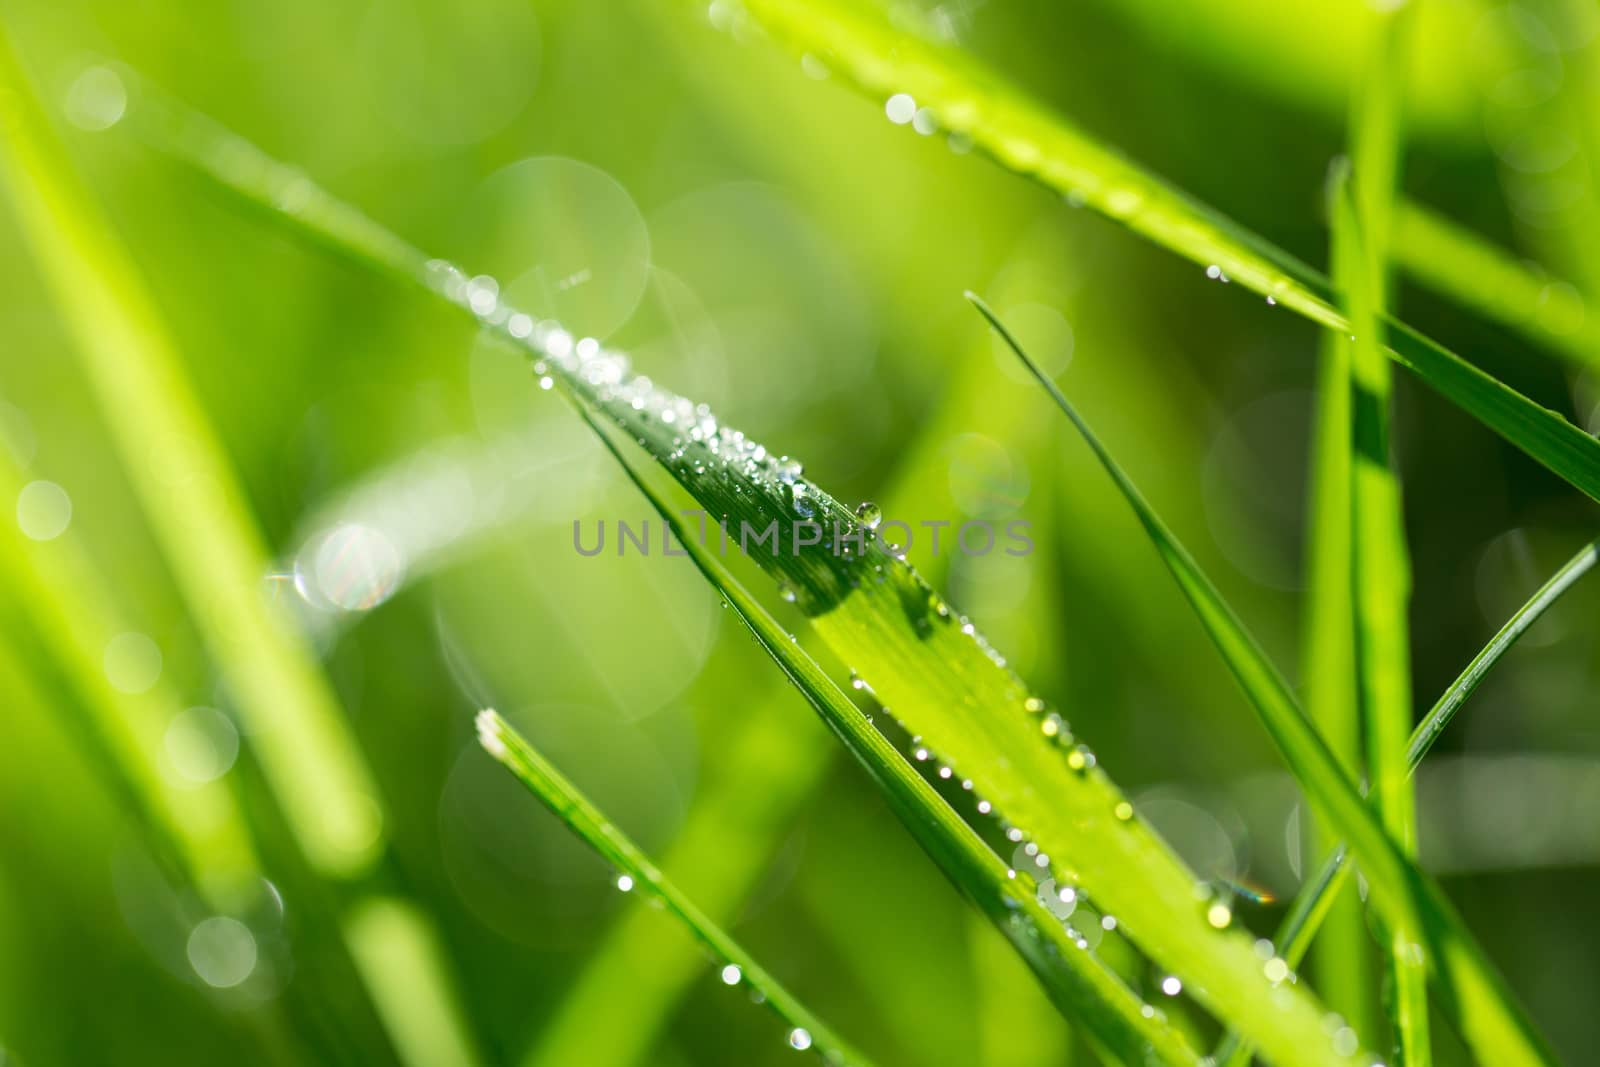 Blade of grass in morning dew by Garsya